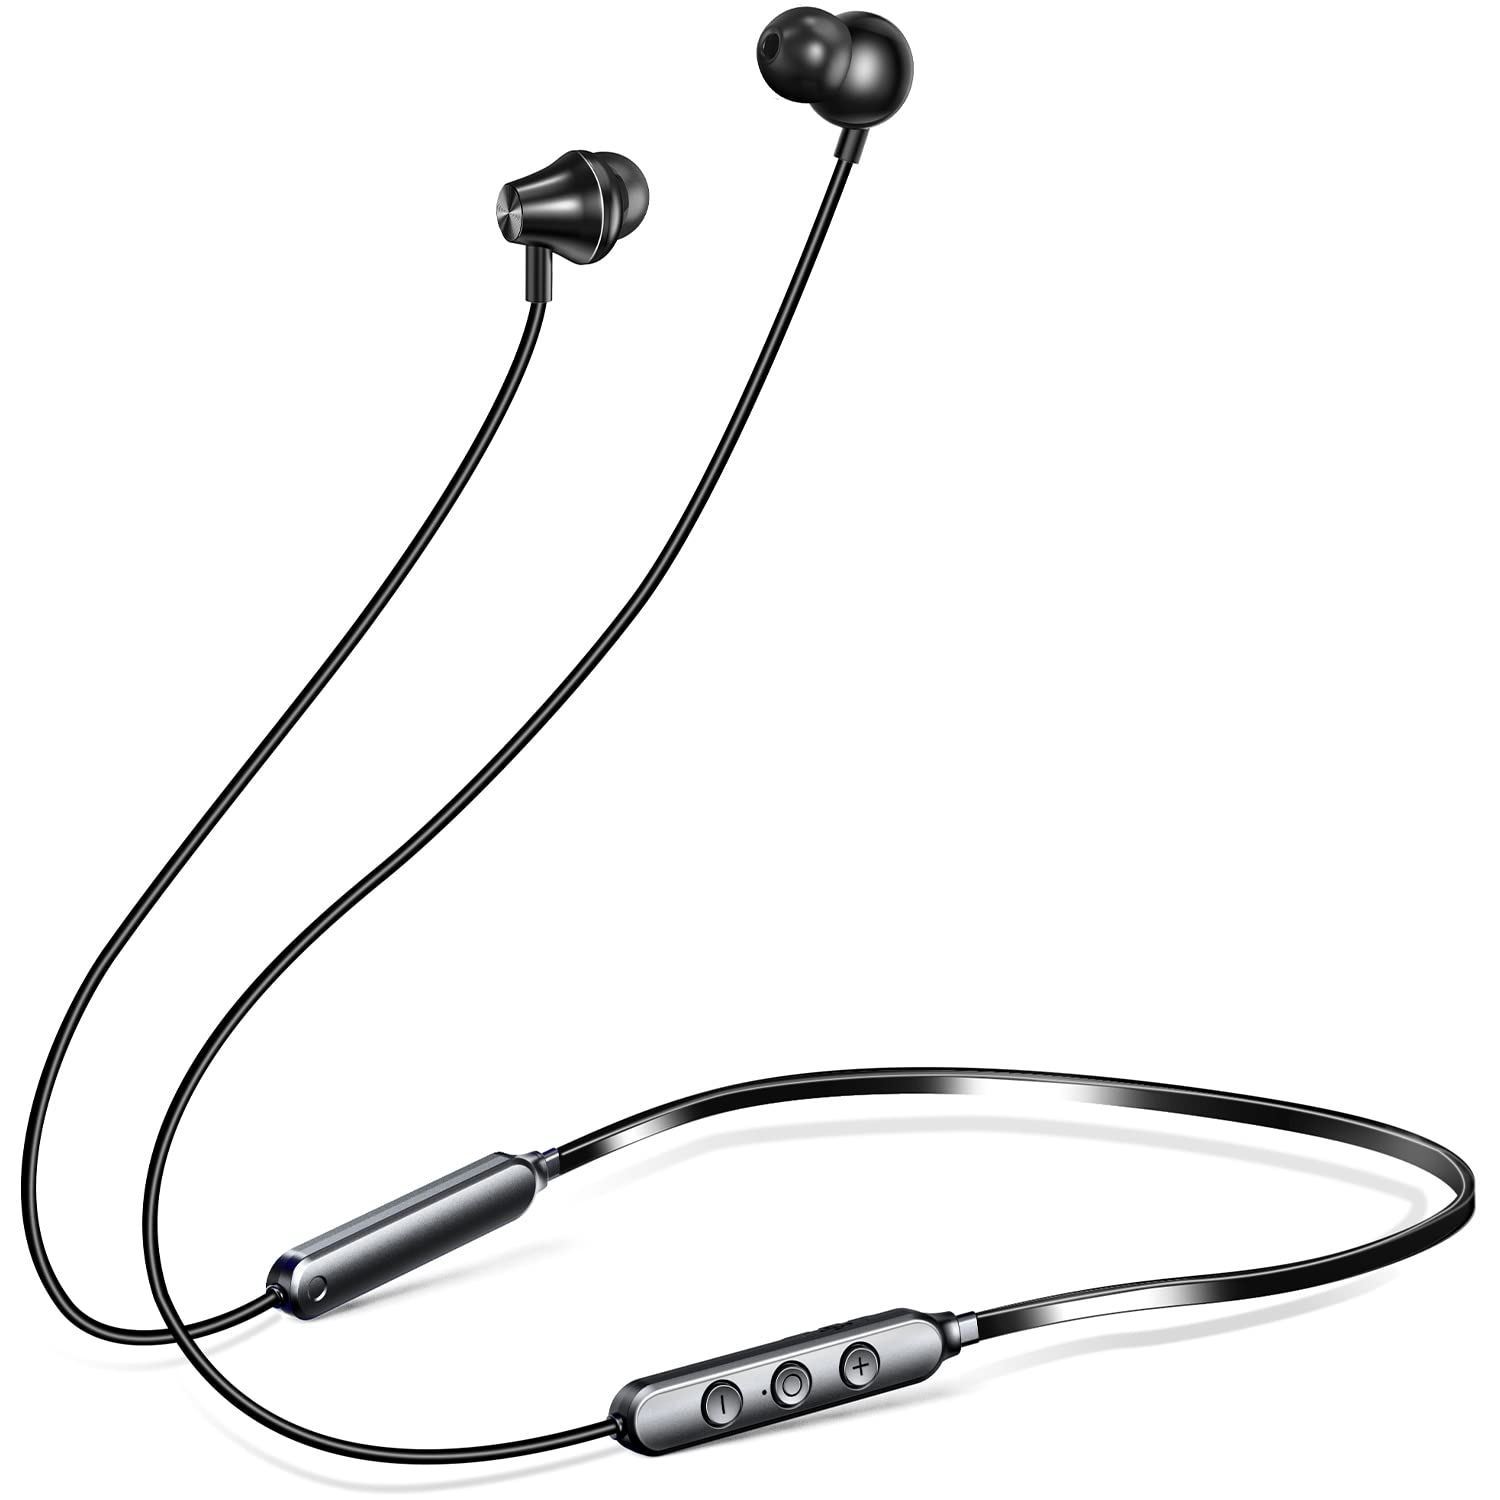 Bluetoothイヤホン 耳掛け式 スポーツ ワイヤレス